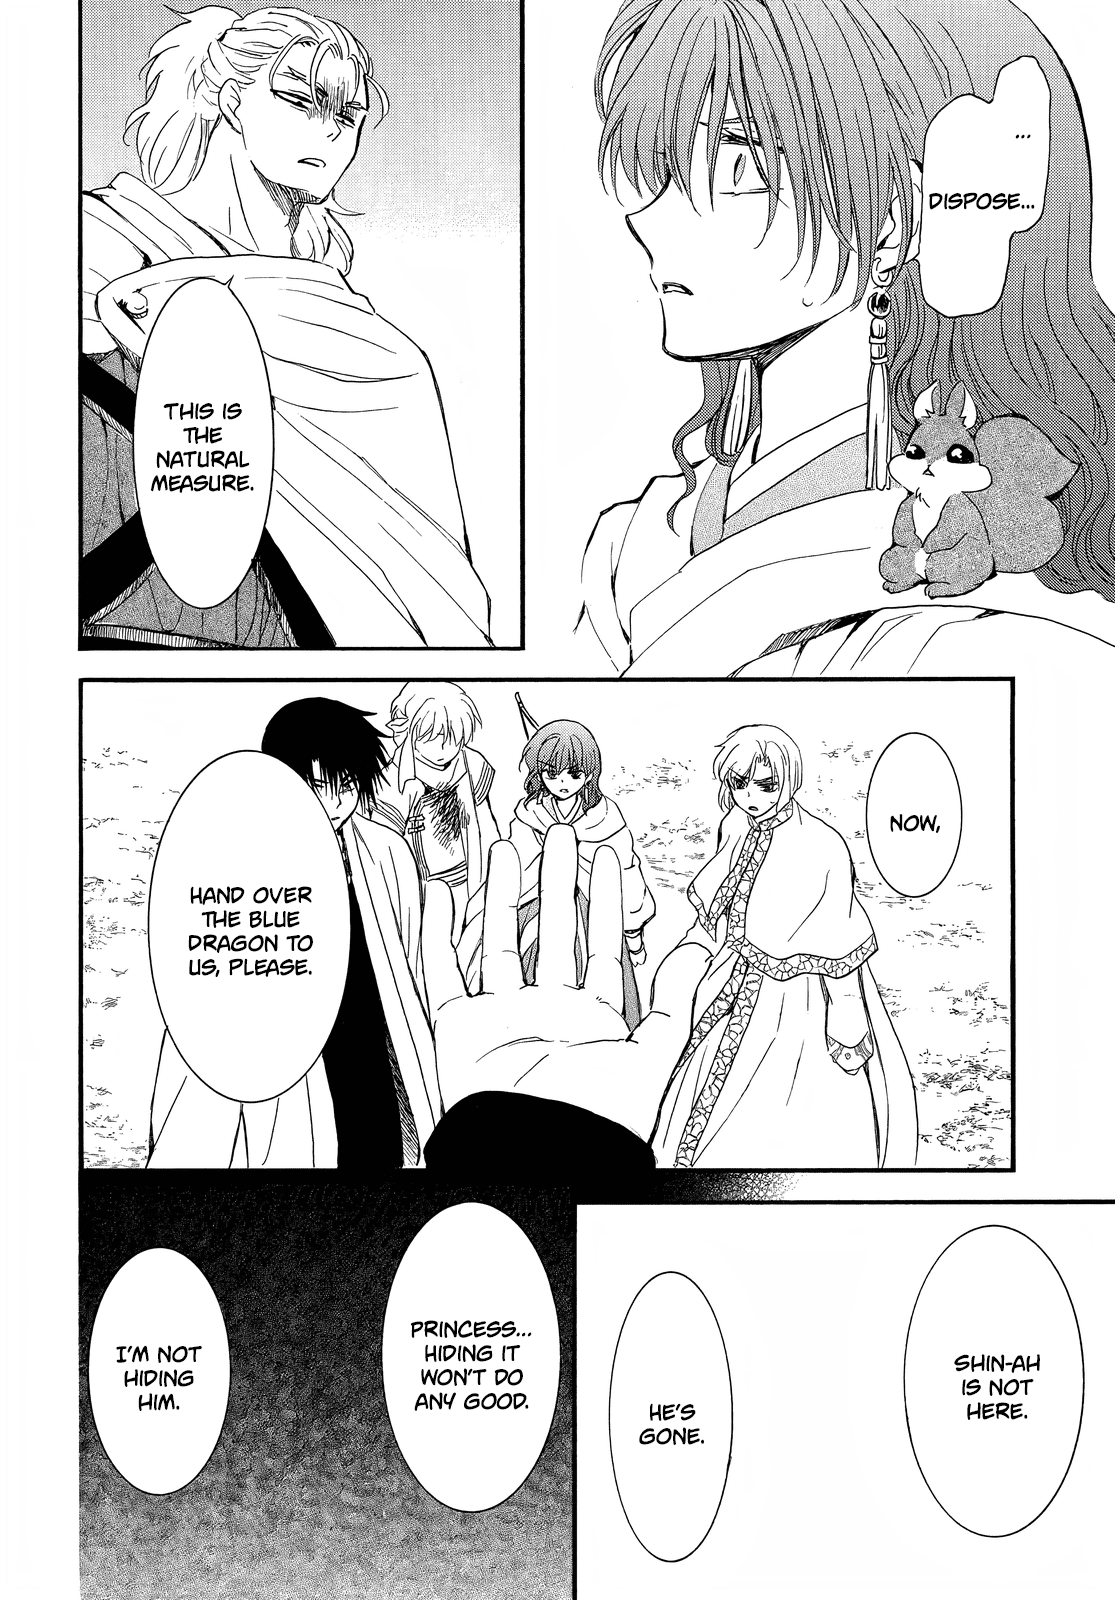 Akatsuki No Yona, Chapter 251 - Akatsuki No Yona Manga Online